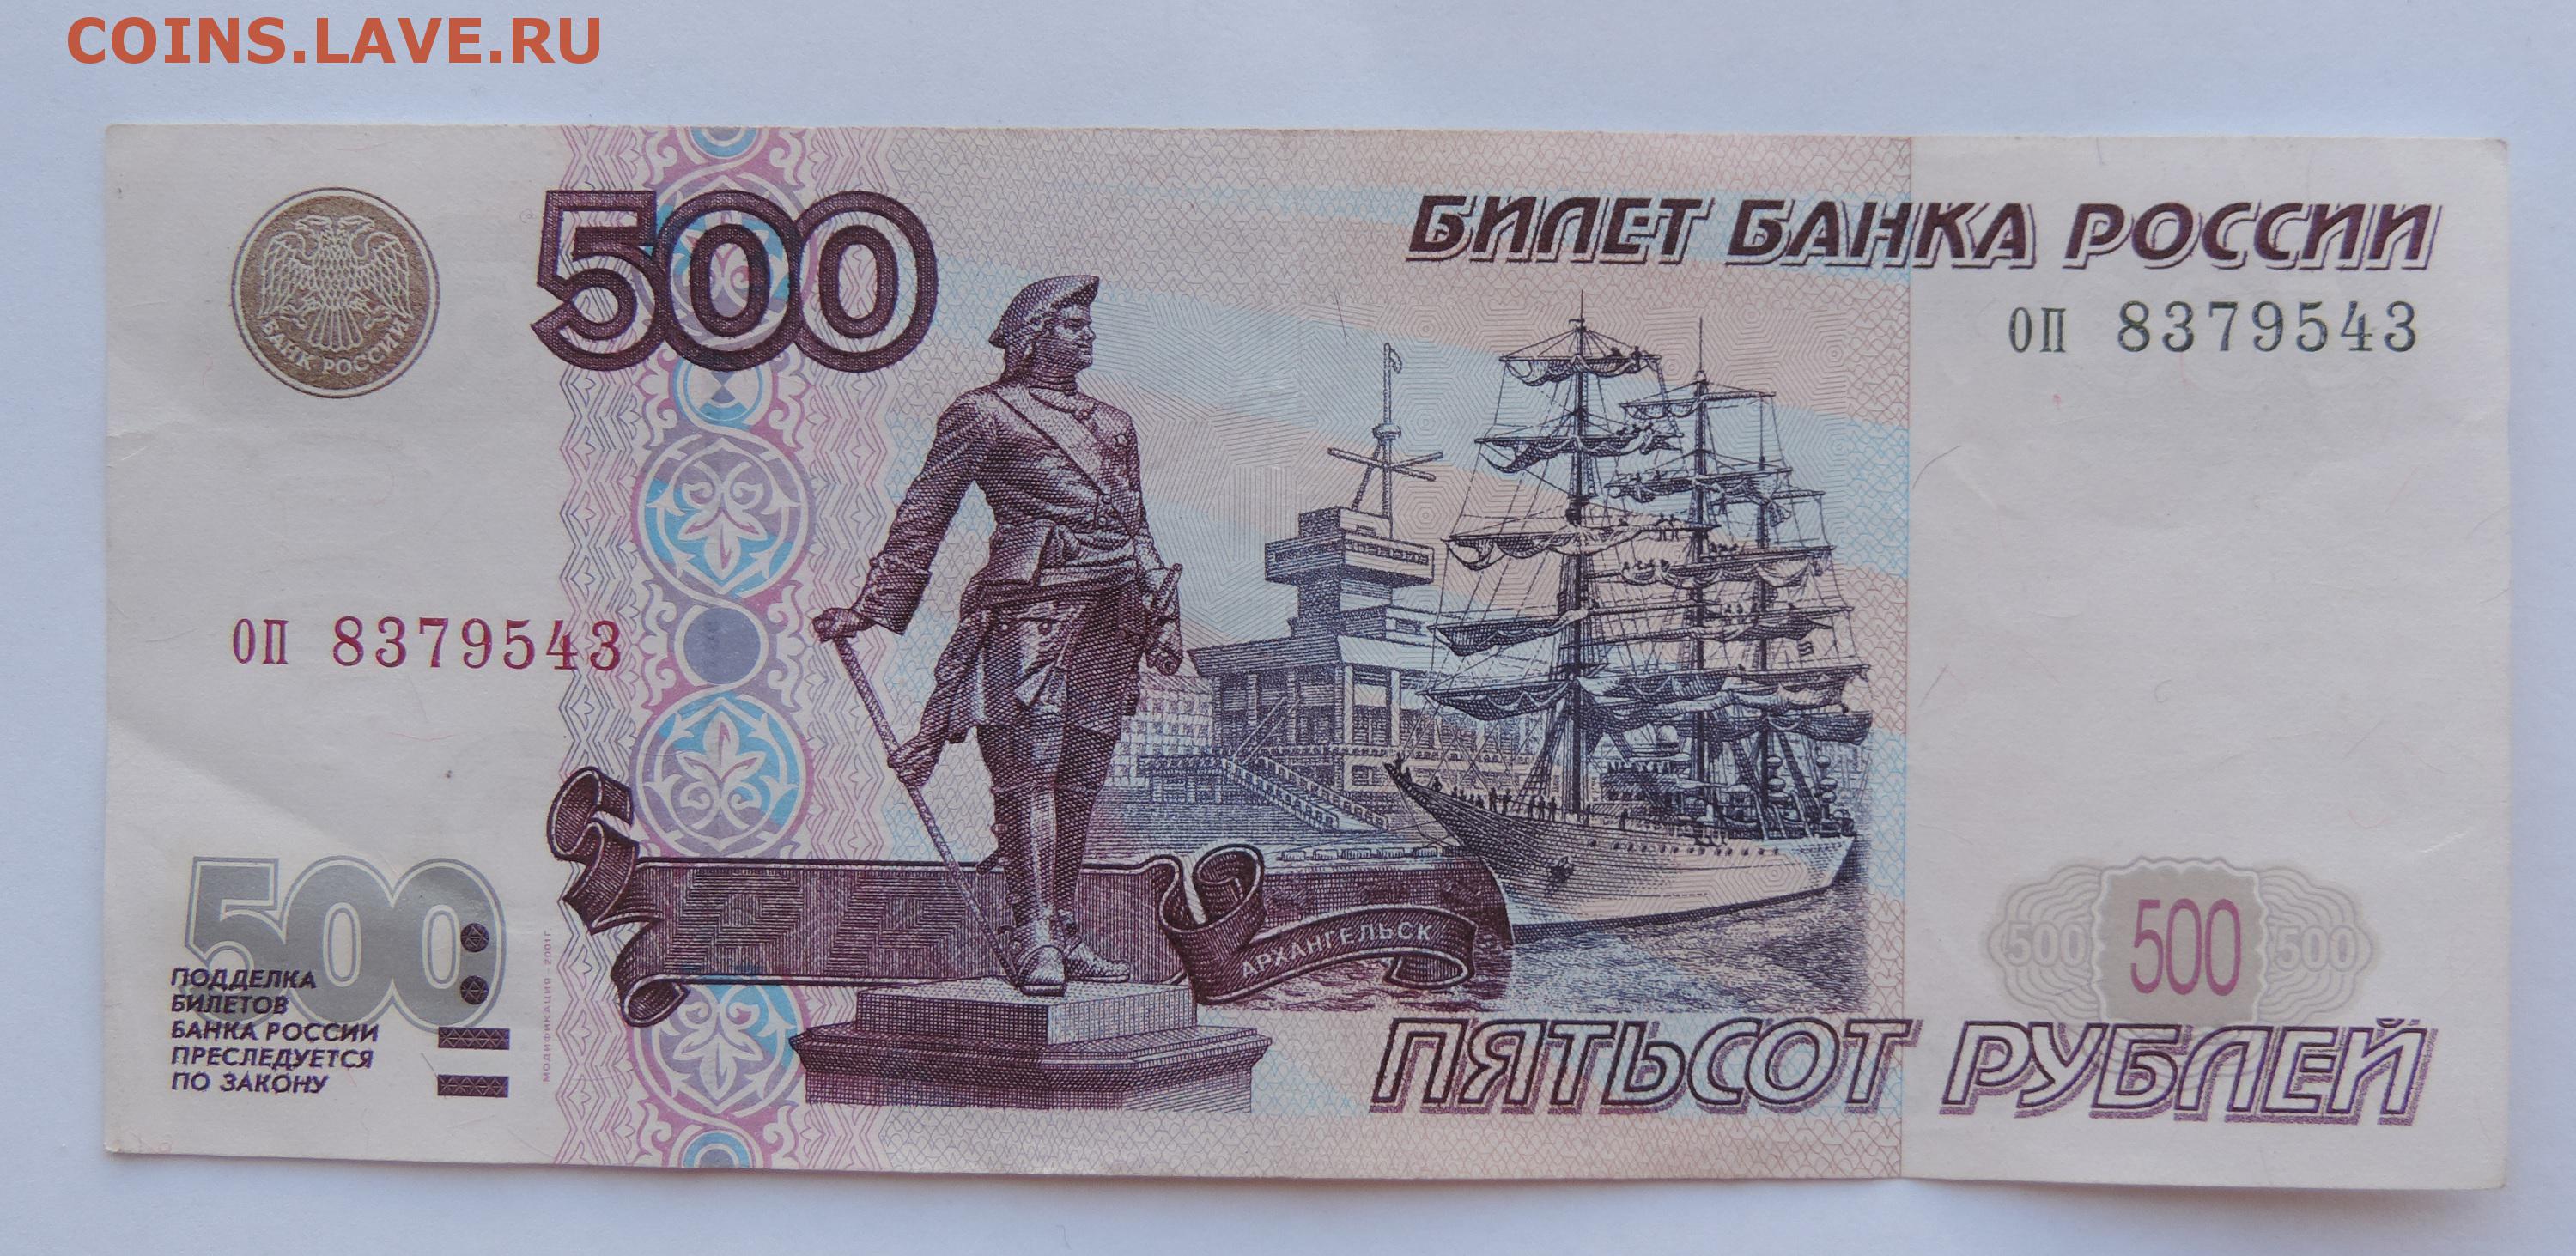 300 500 рублей. Купюра 500 рублей. 500 Рублей. 500 Рублей с корабликом. Купюра 500 рублей с корабликом.